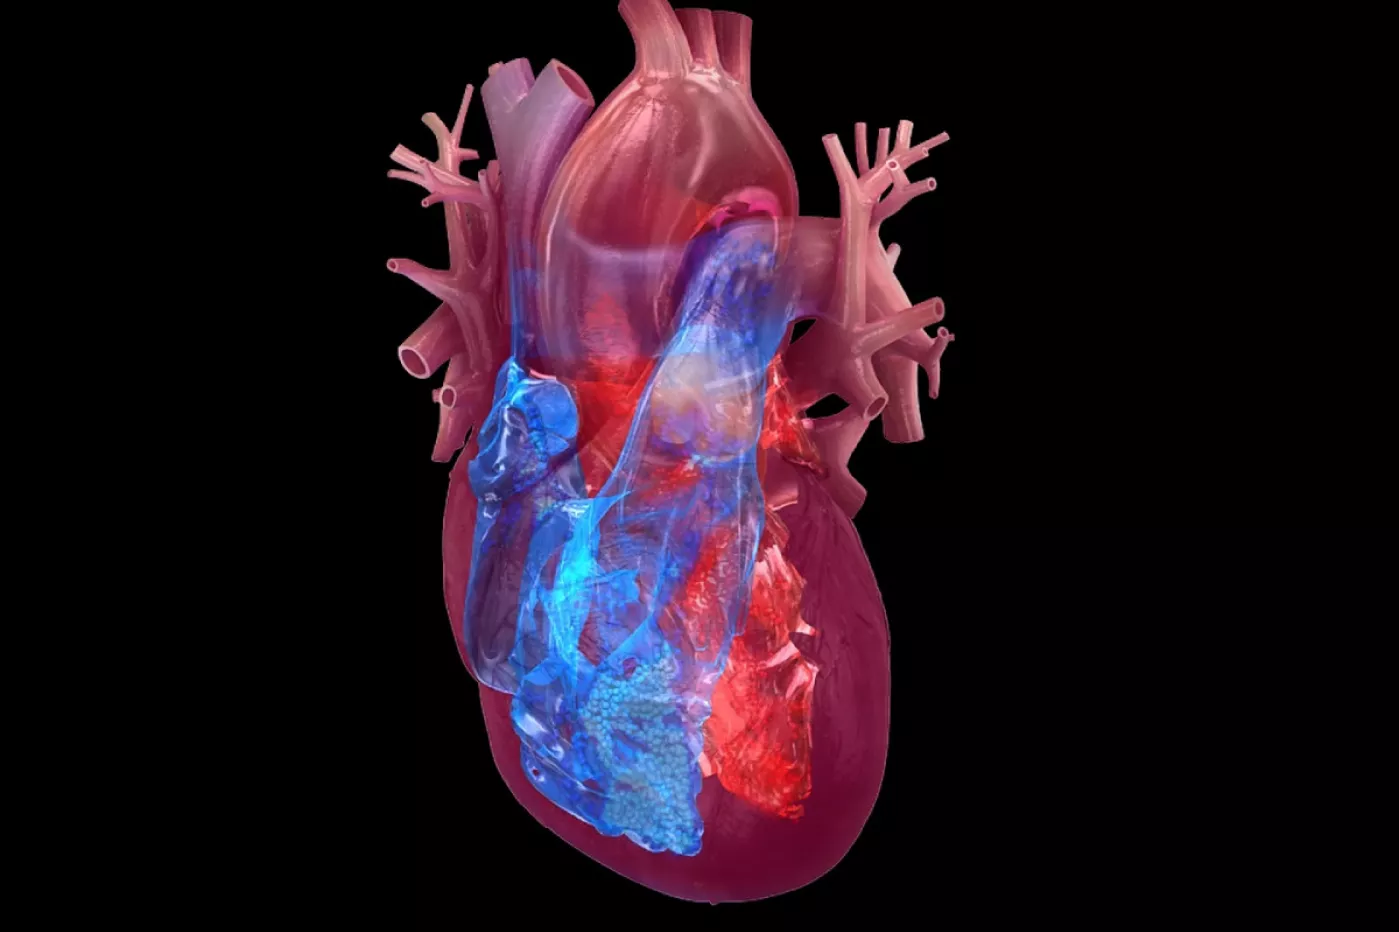 En un 80% de los niños con MIS-C, hay afectación del ventrículo izquierdo cardíaco.